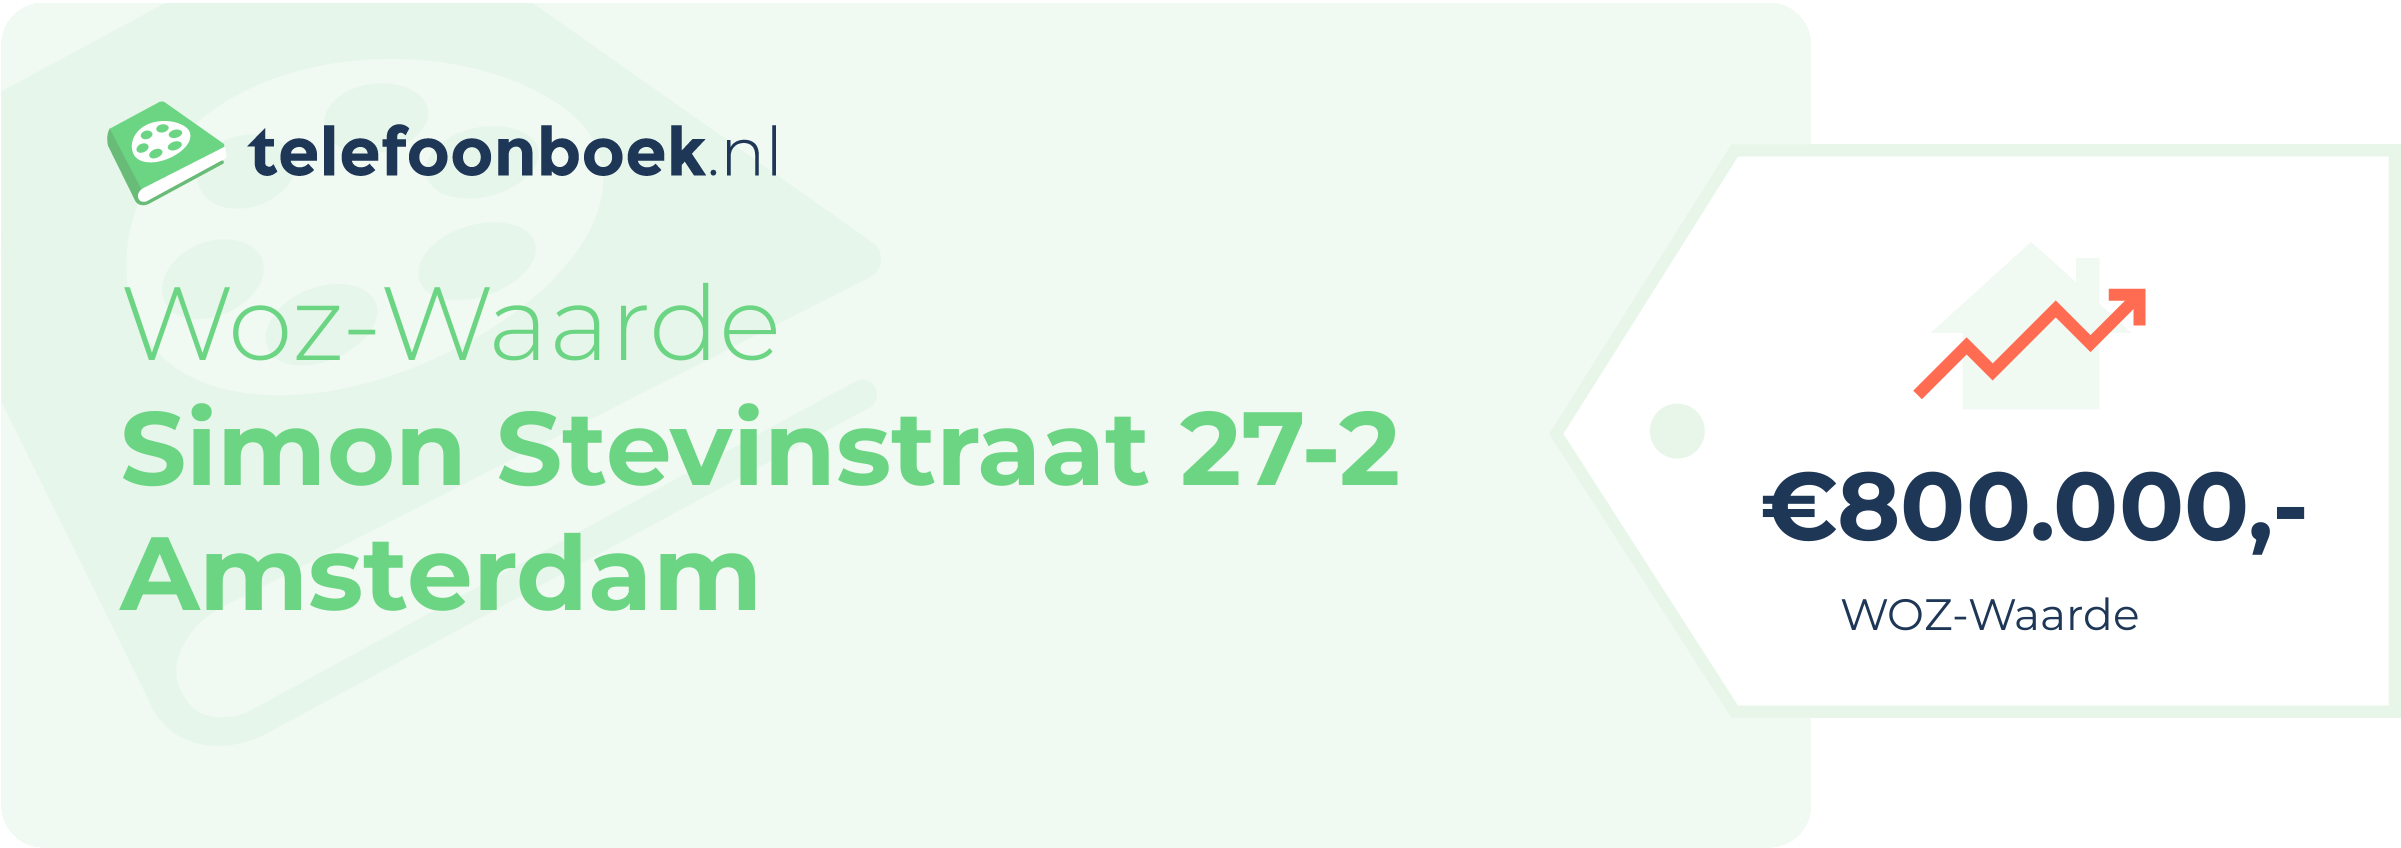 WOZ-waarde Simon Stevinstraat 27-2 Amsterdam